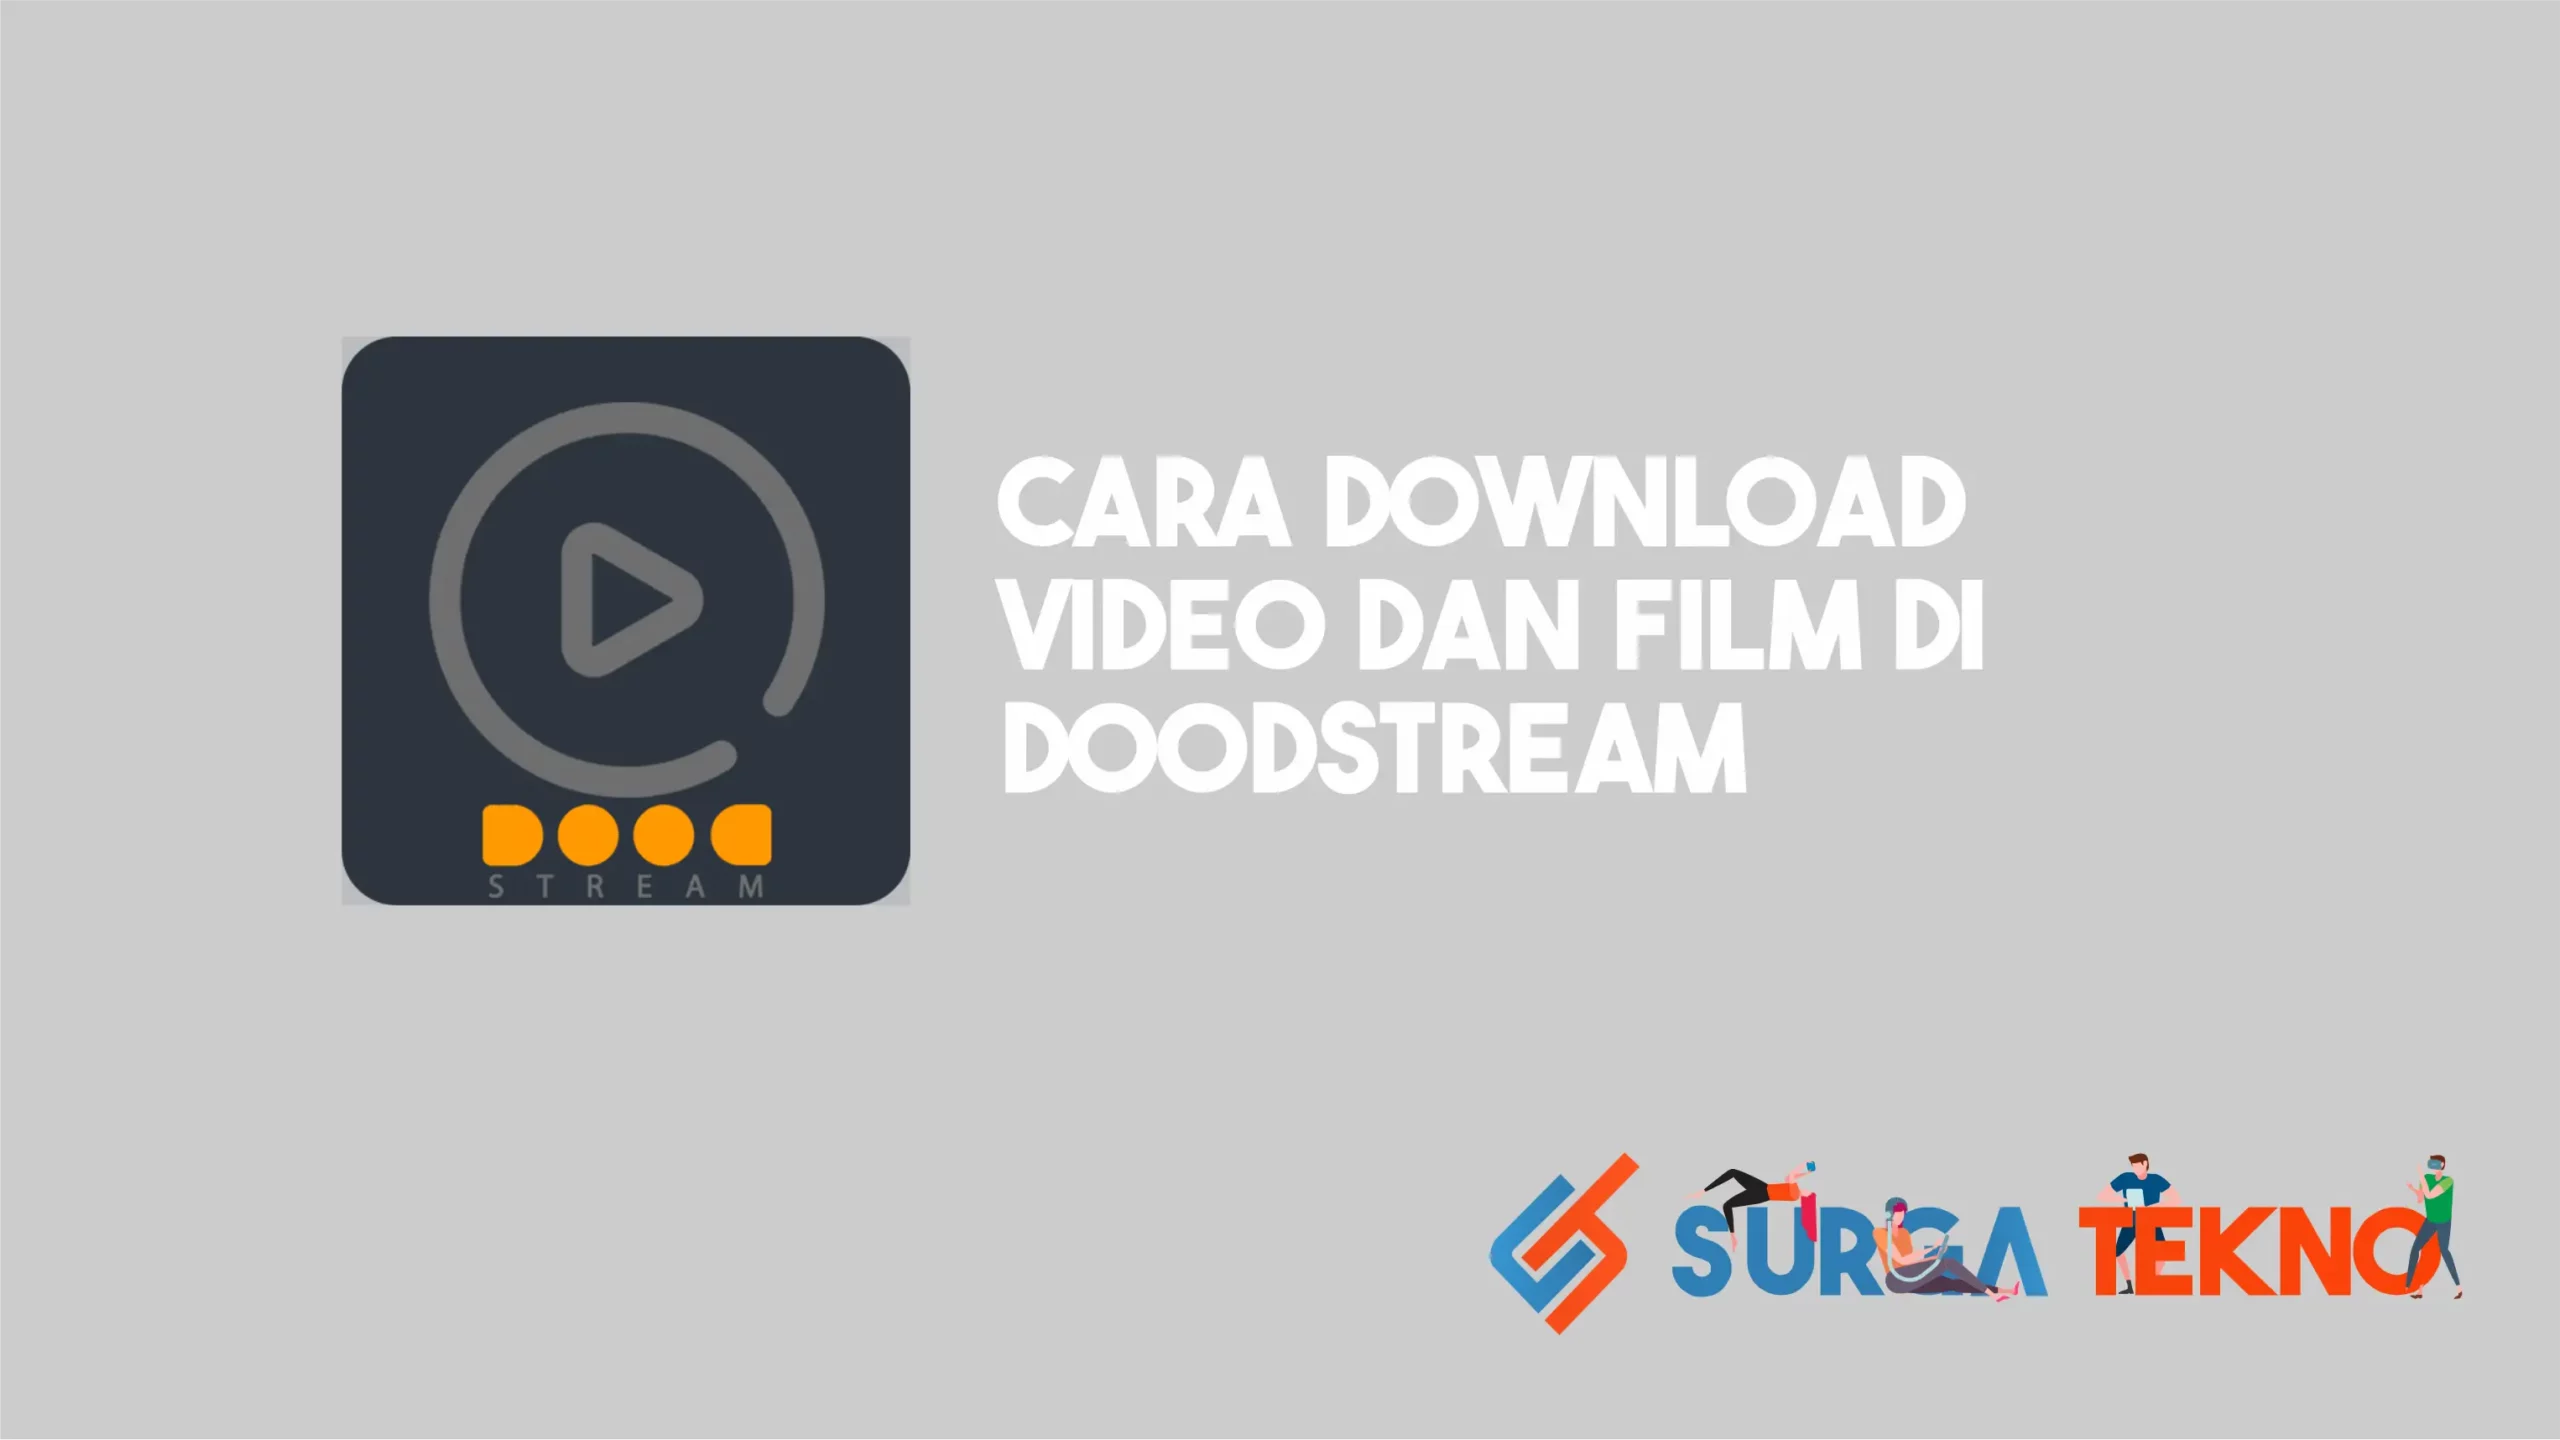 Cara Download Video dan Film di DoodStream